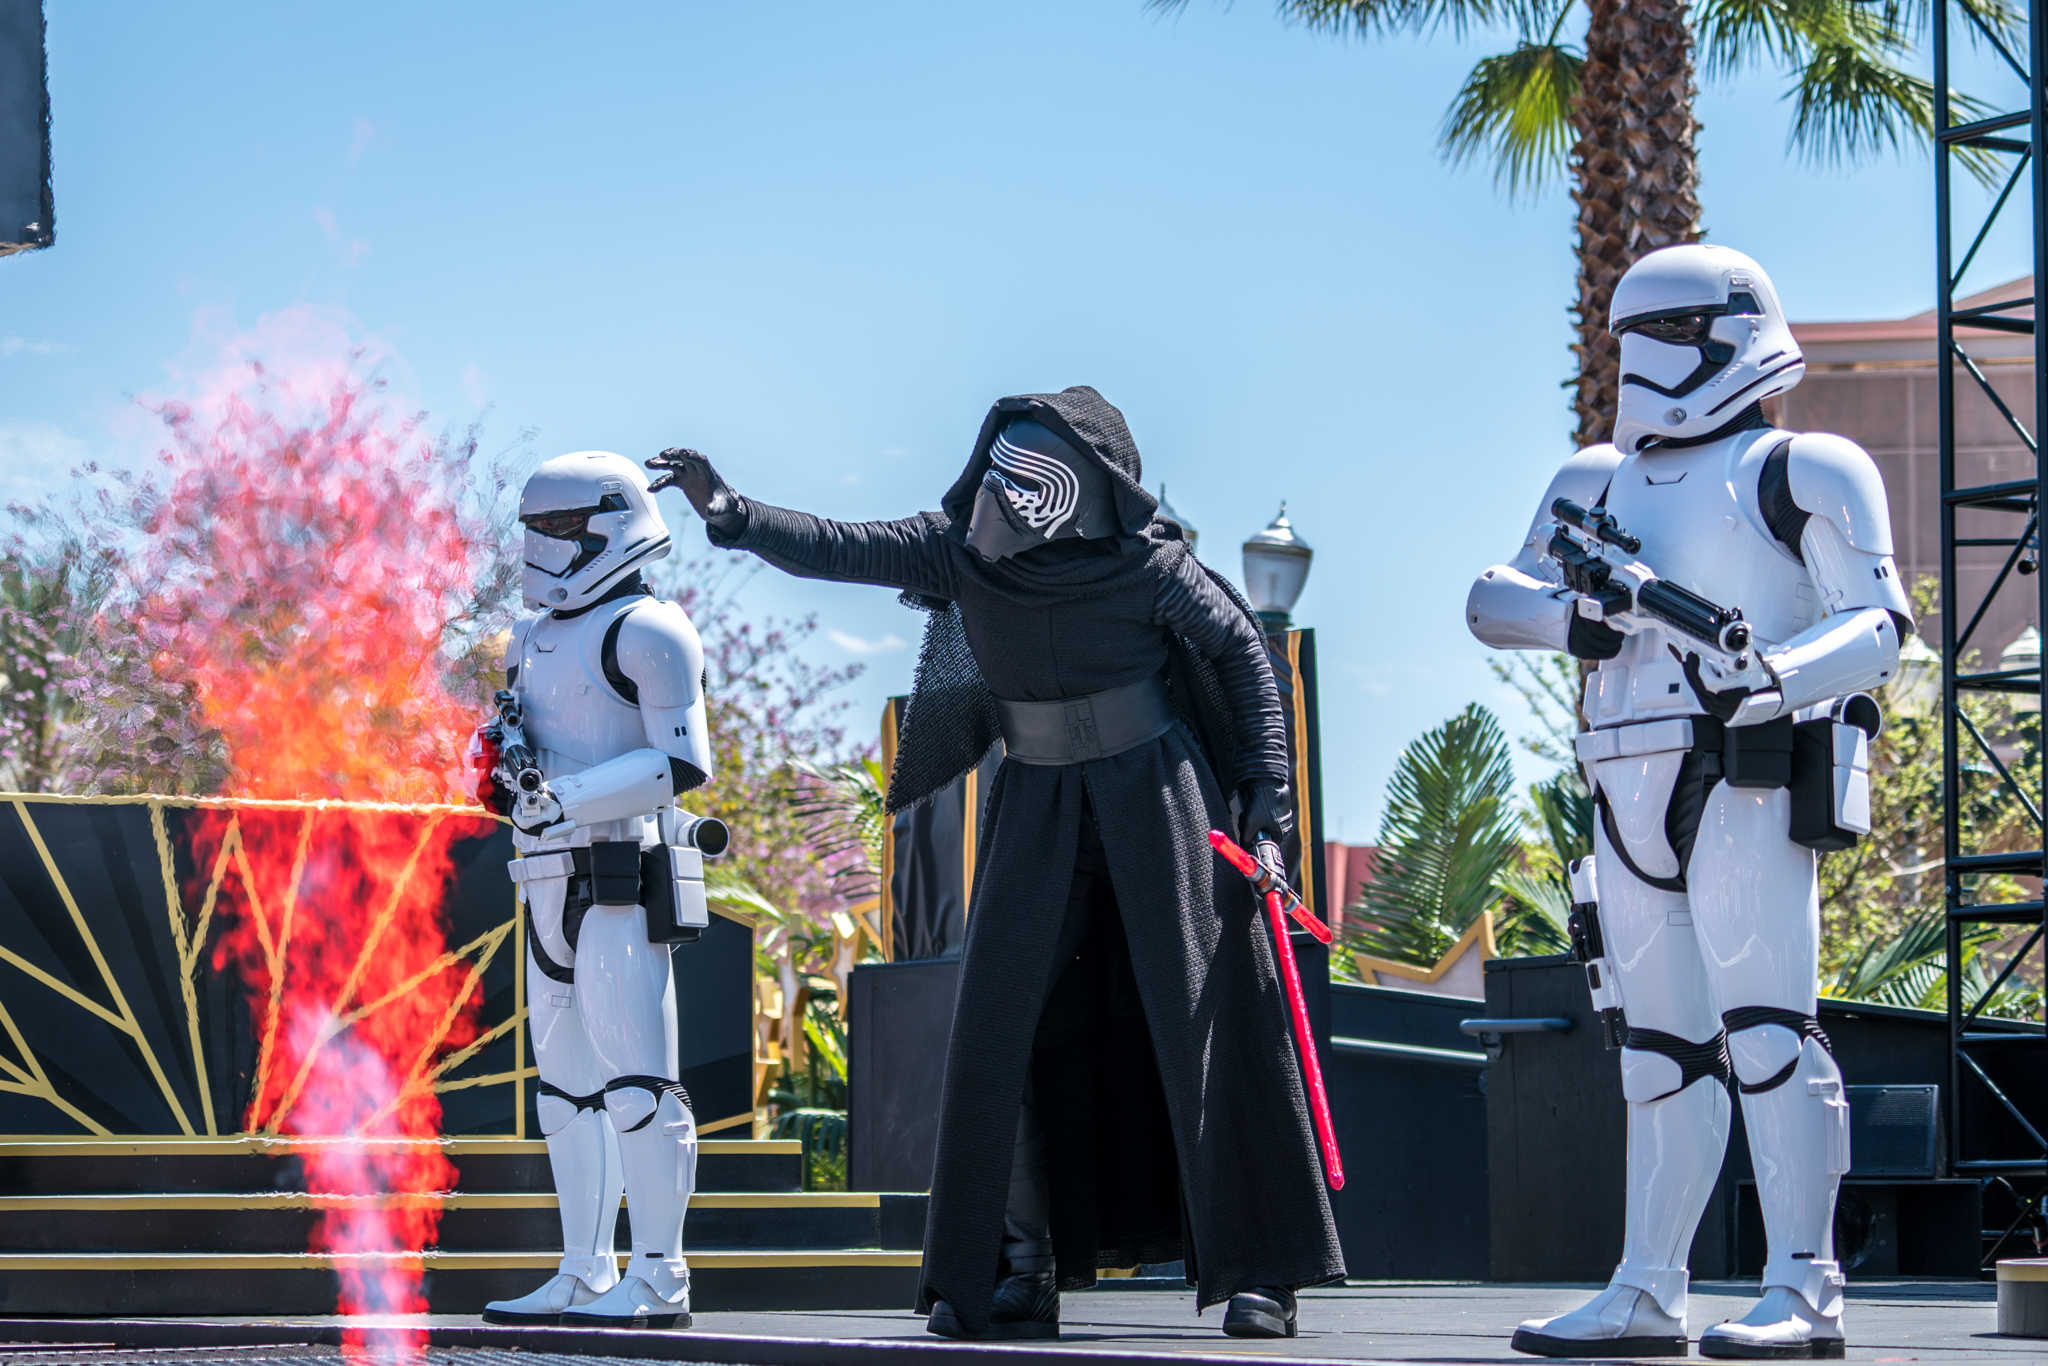 Nuevos espectáculos de Star Wars irrumpen en escena en Disney's Hollywood Studios